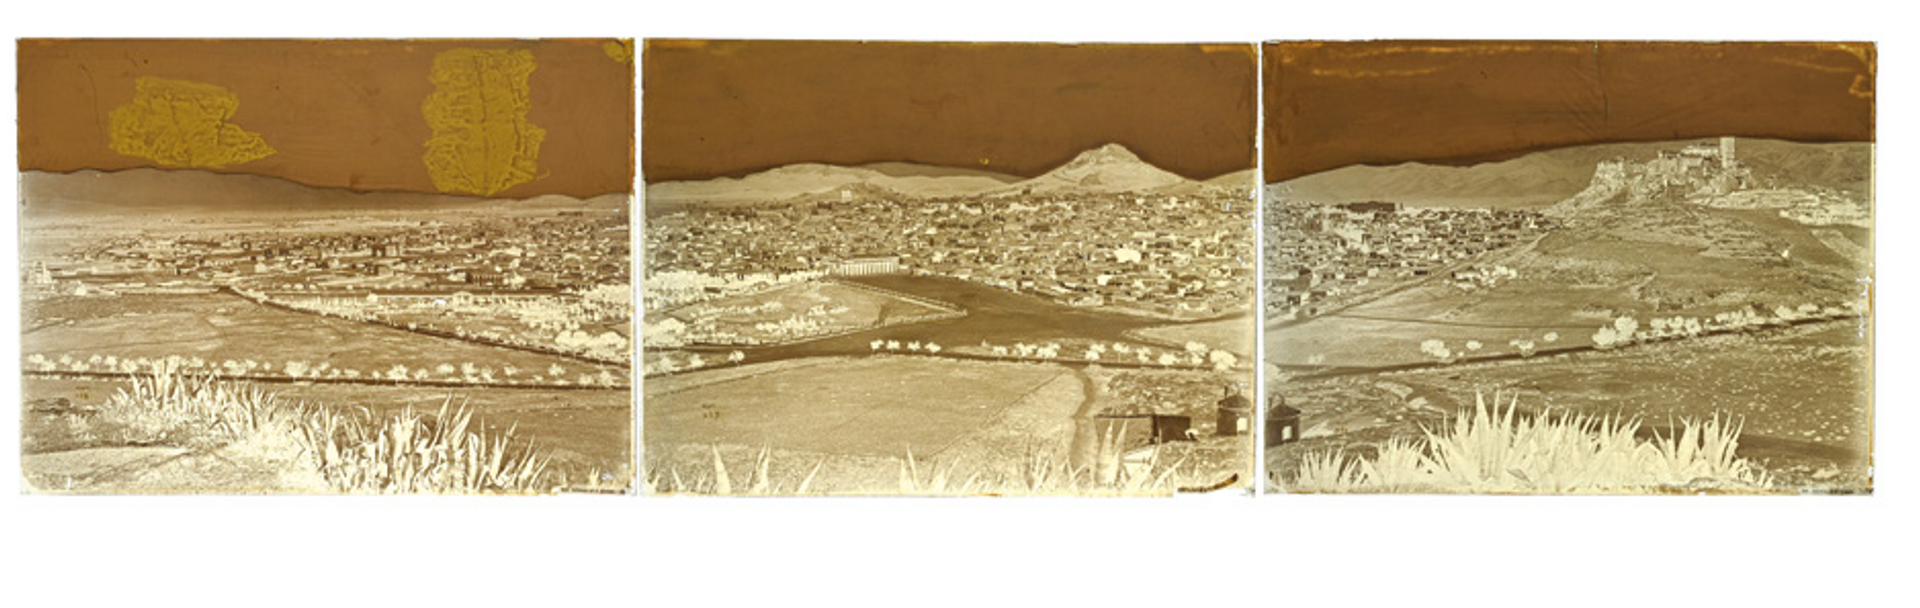 Félix Bonfils, Panorama d’Athènes en trois parties, entre 1867 et 1875, trois négatifs au collodion humide sur plaques de verre. © De Baeque et Associés